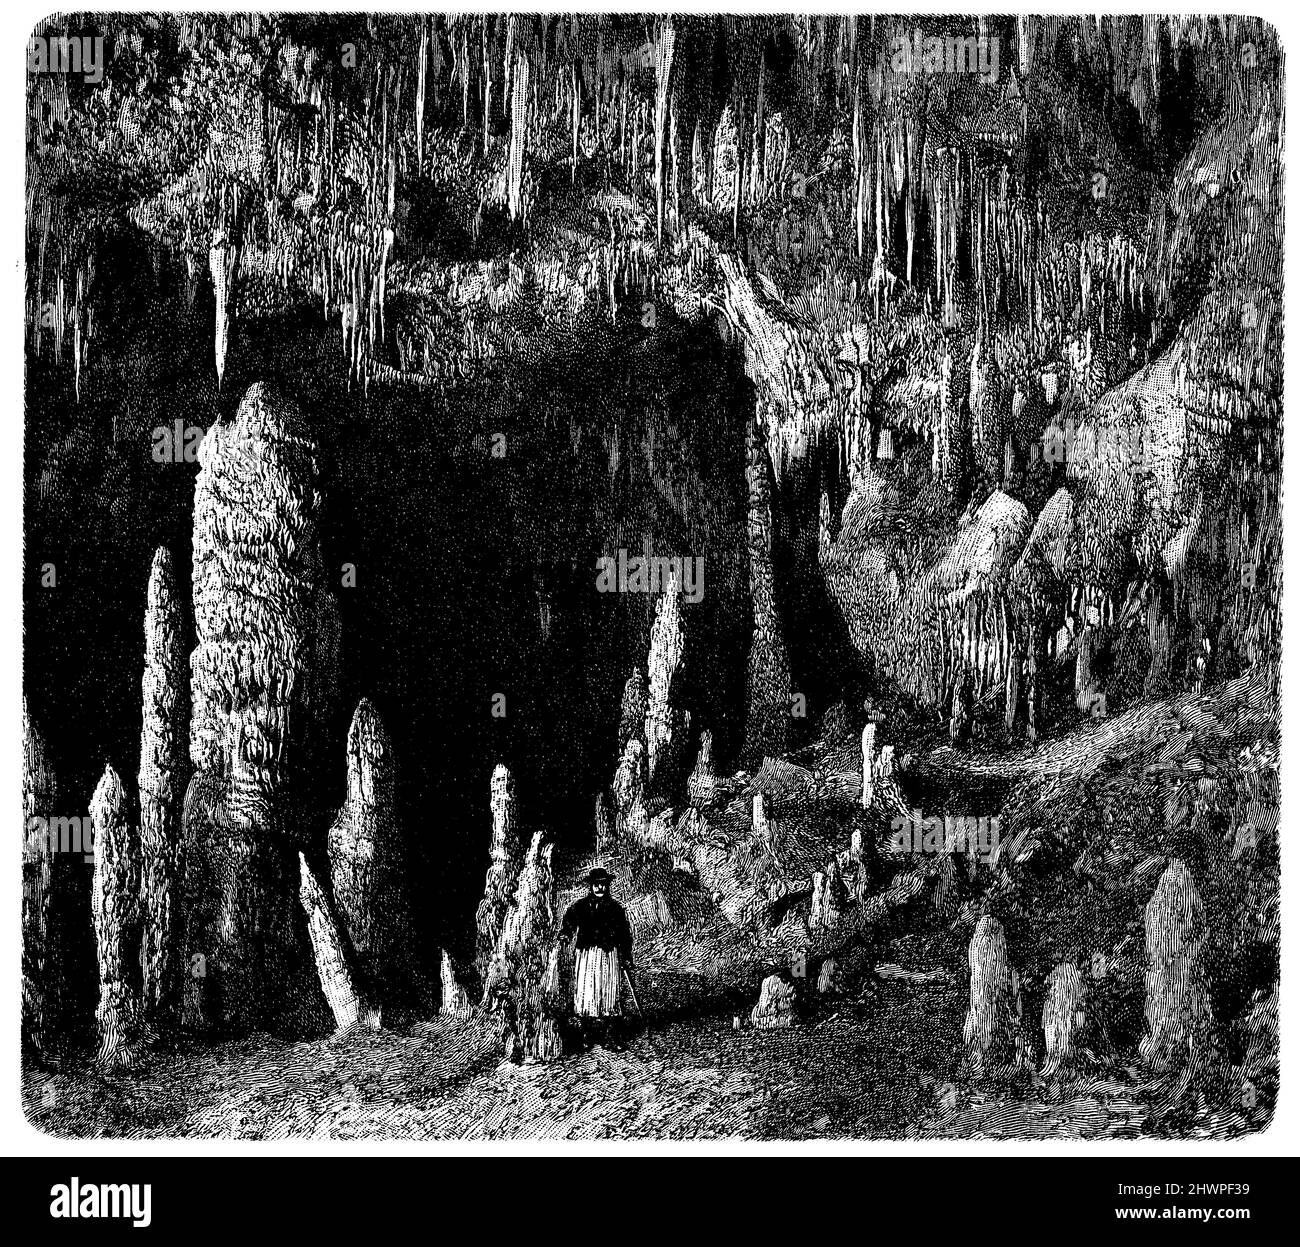 Grotte d'Aggtelek stalactite dans les Carpates, , (atlas, 1909), Tropfsteinhöhle von Aggtelek in den Karpaten, Grotte de stalactites d'Aggtelek dans les Carpates Banque D'Images